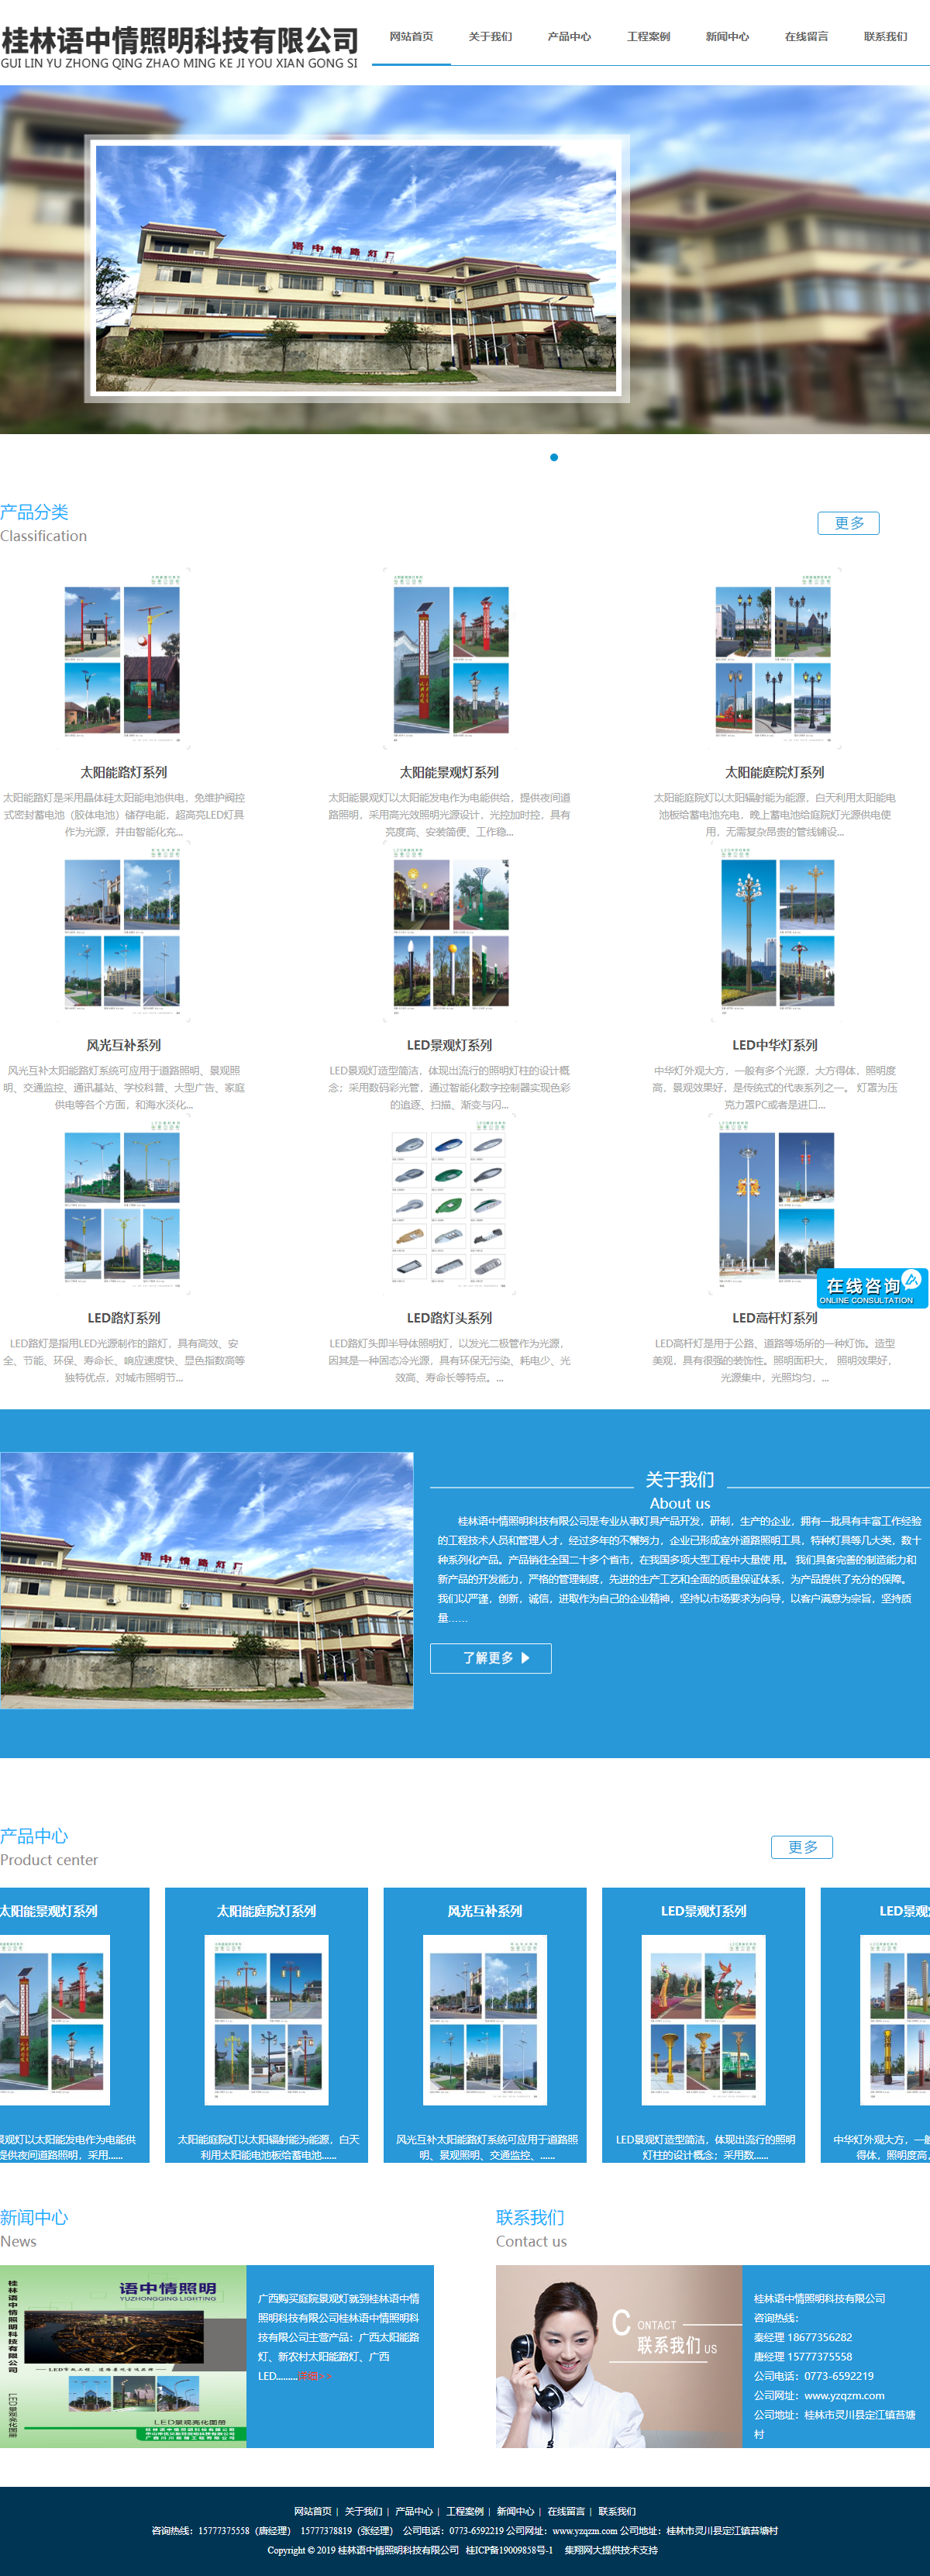 桂林语中情照明科技有限公司网站案例